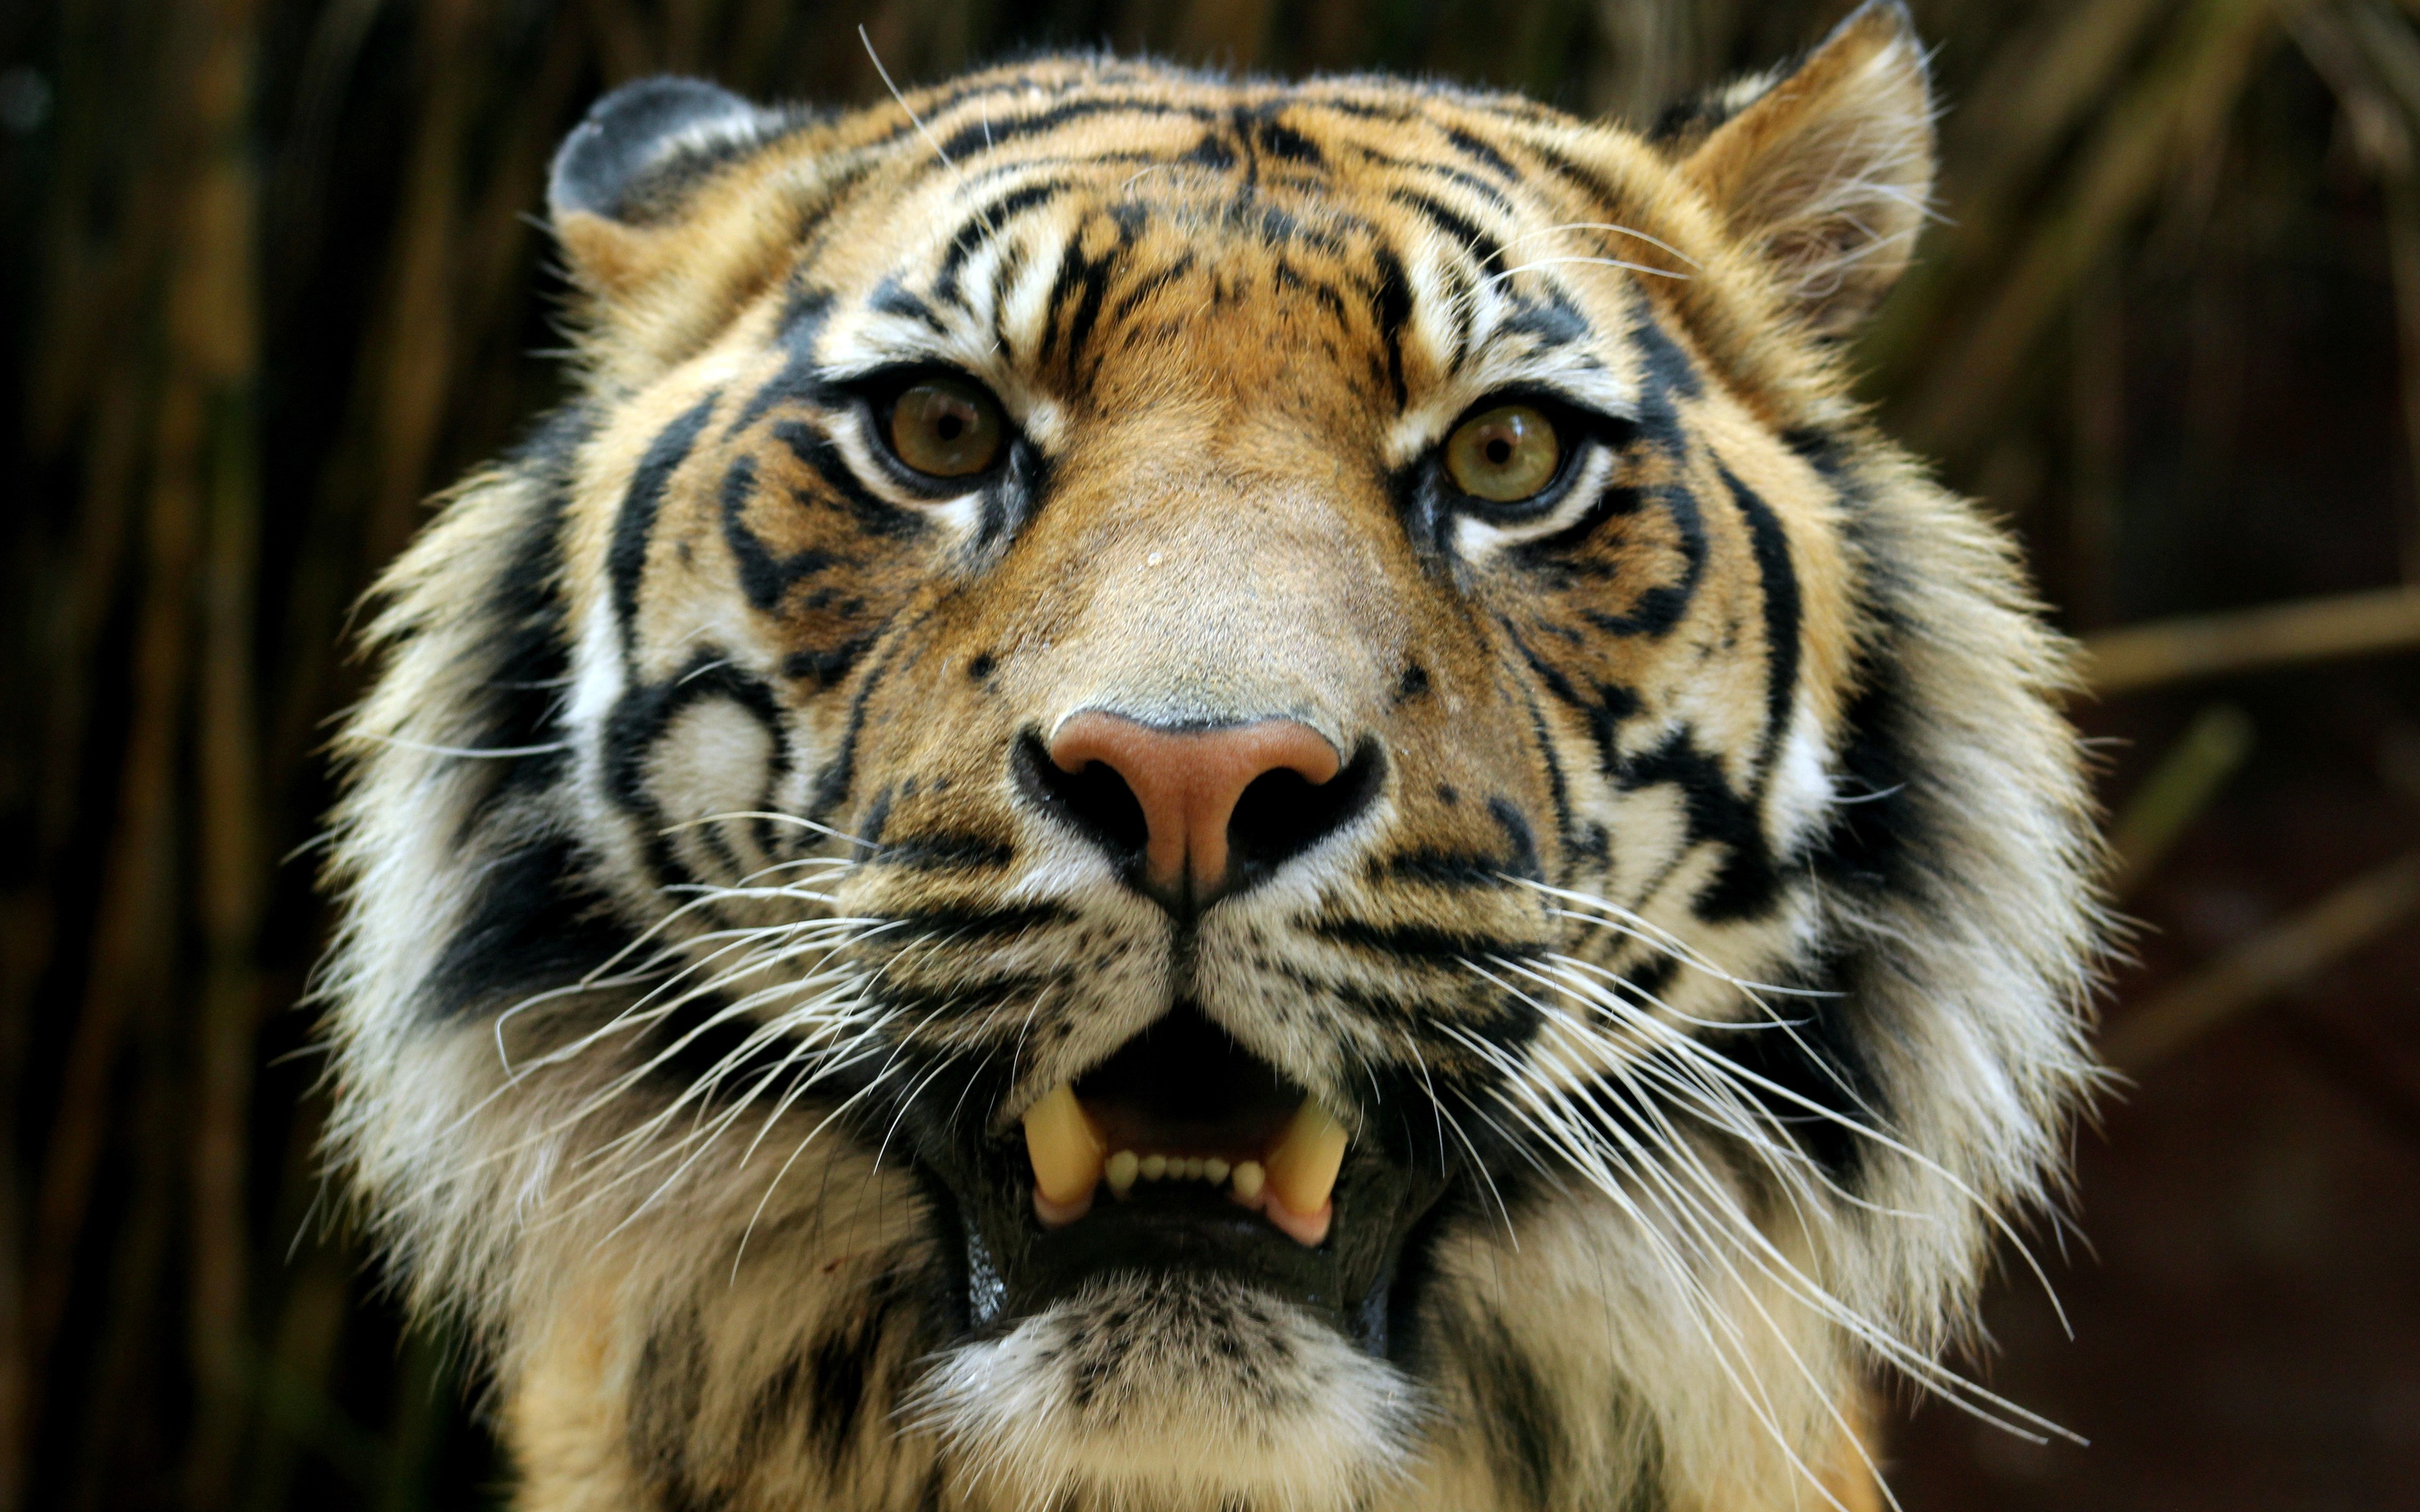 General 3840x2400 Bengal tigers animals wildlife big cats mammals closeup